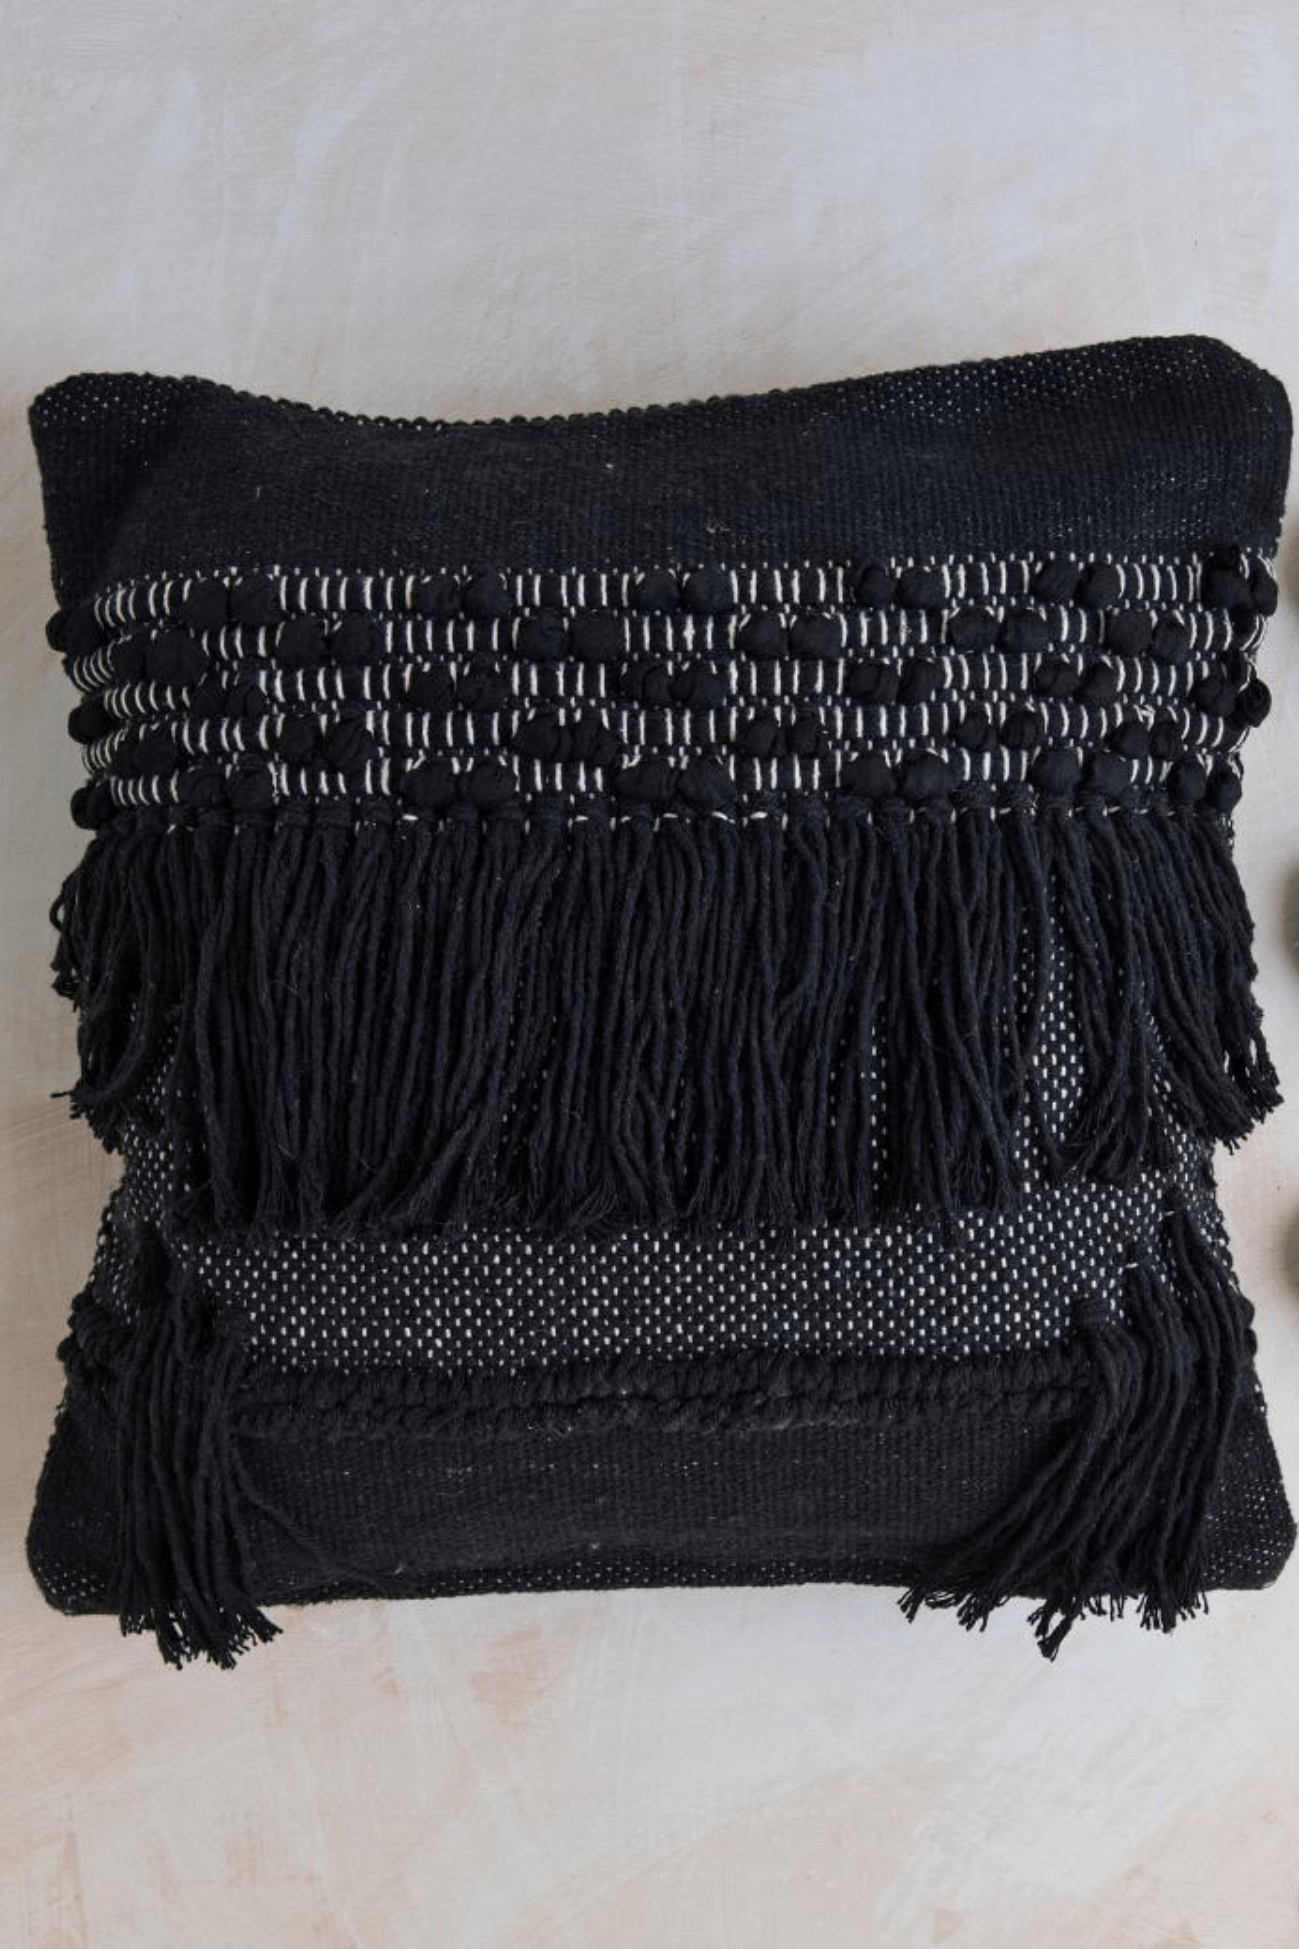 Luxe Lodge Rebi Cuscino arredo nero imbottito in cotone con frange in stile boho